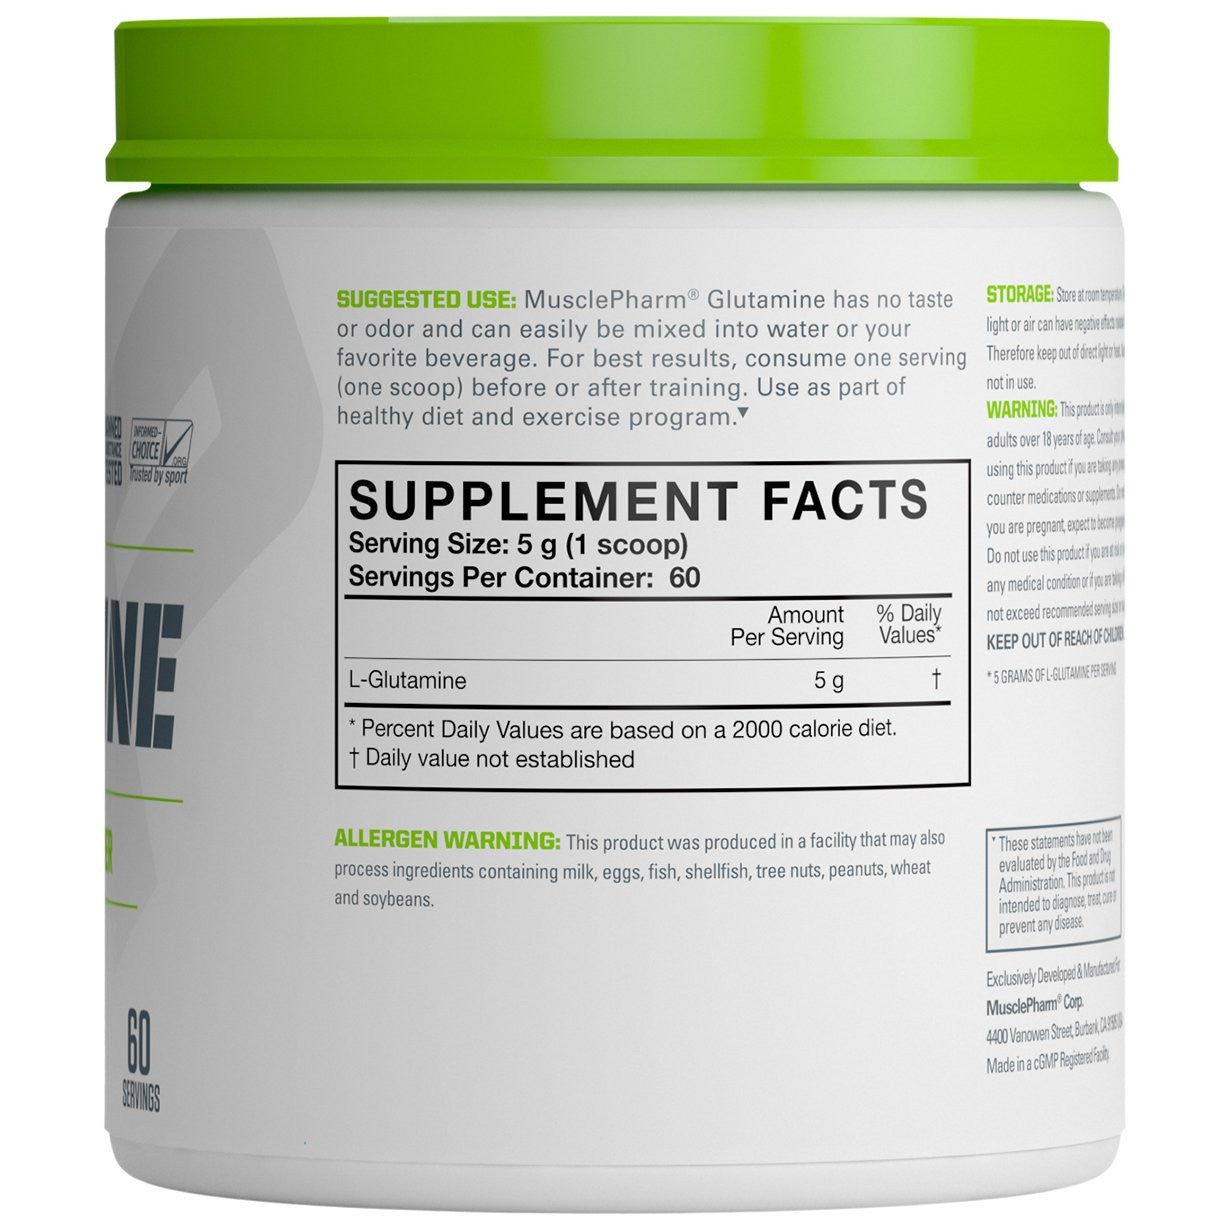 MusclePharm Essentials Glutamine Supplement Facts